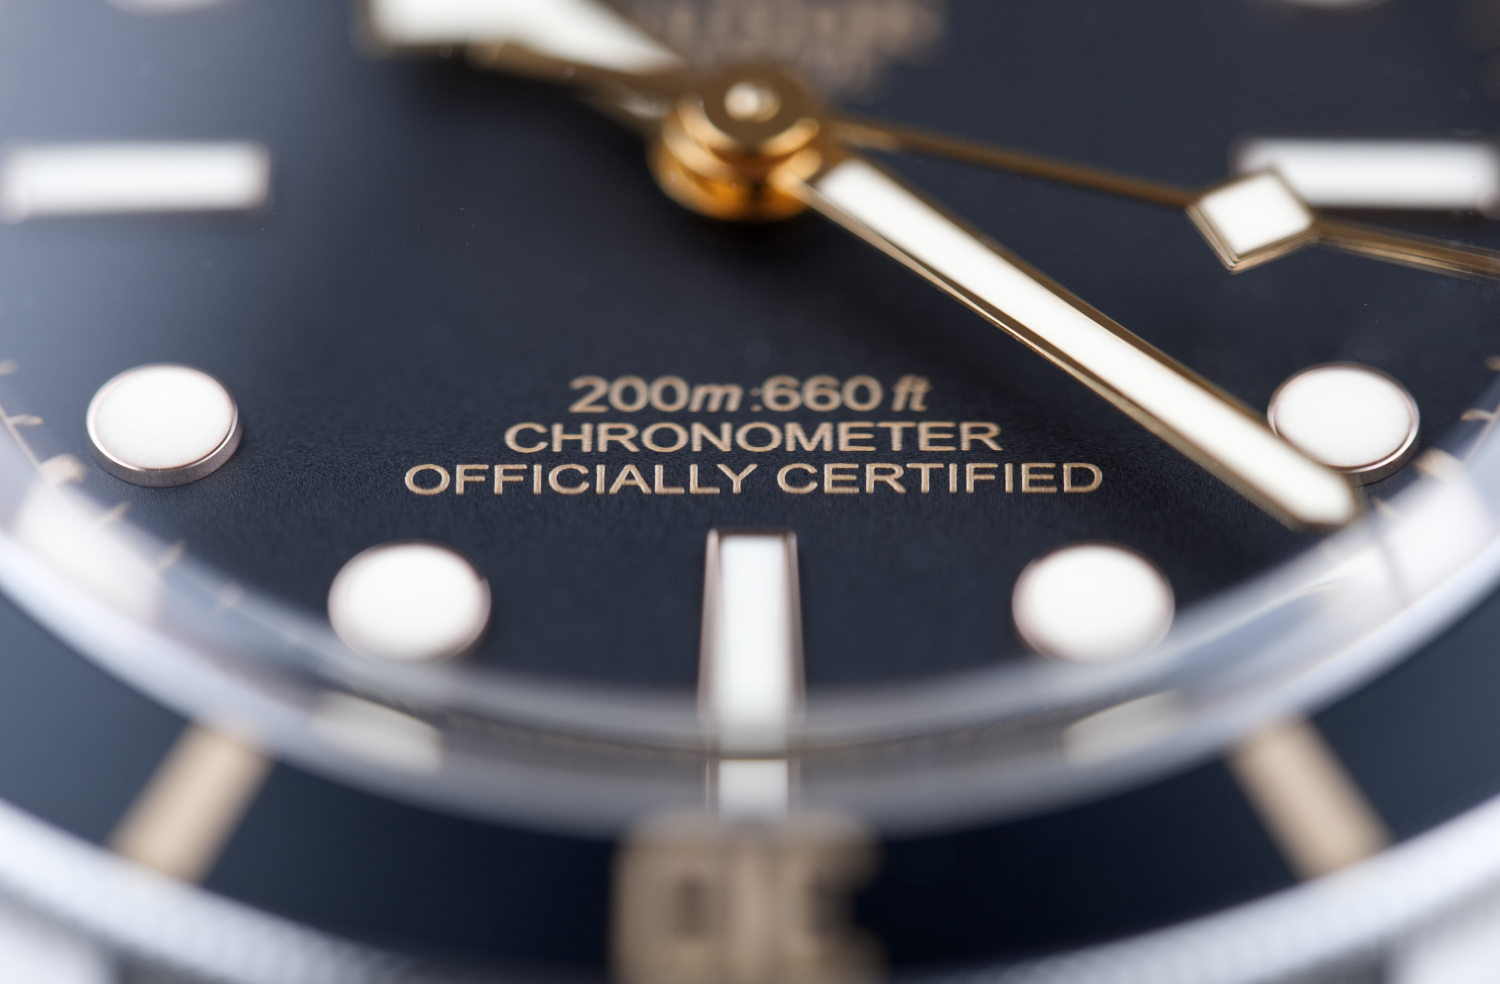 Первоначально создавались как более   по умеренной цене   альтернатива часам Rolex, Tudor сформировал свою индивидуальность в последние годы;  Подвиг достигнут благодаря таким часам, как Black Bay Fifty-Eight (58) и Pelagos LHD